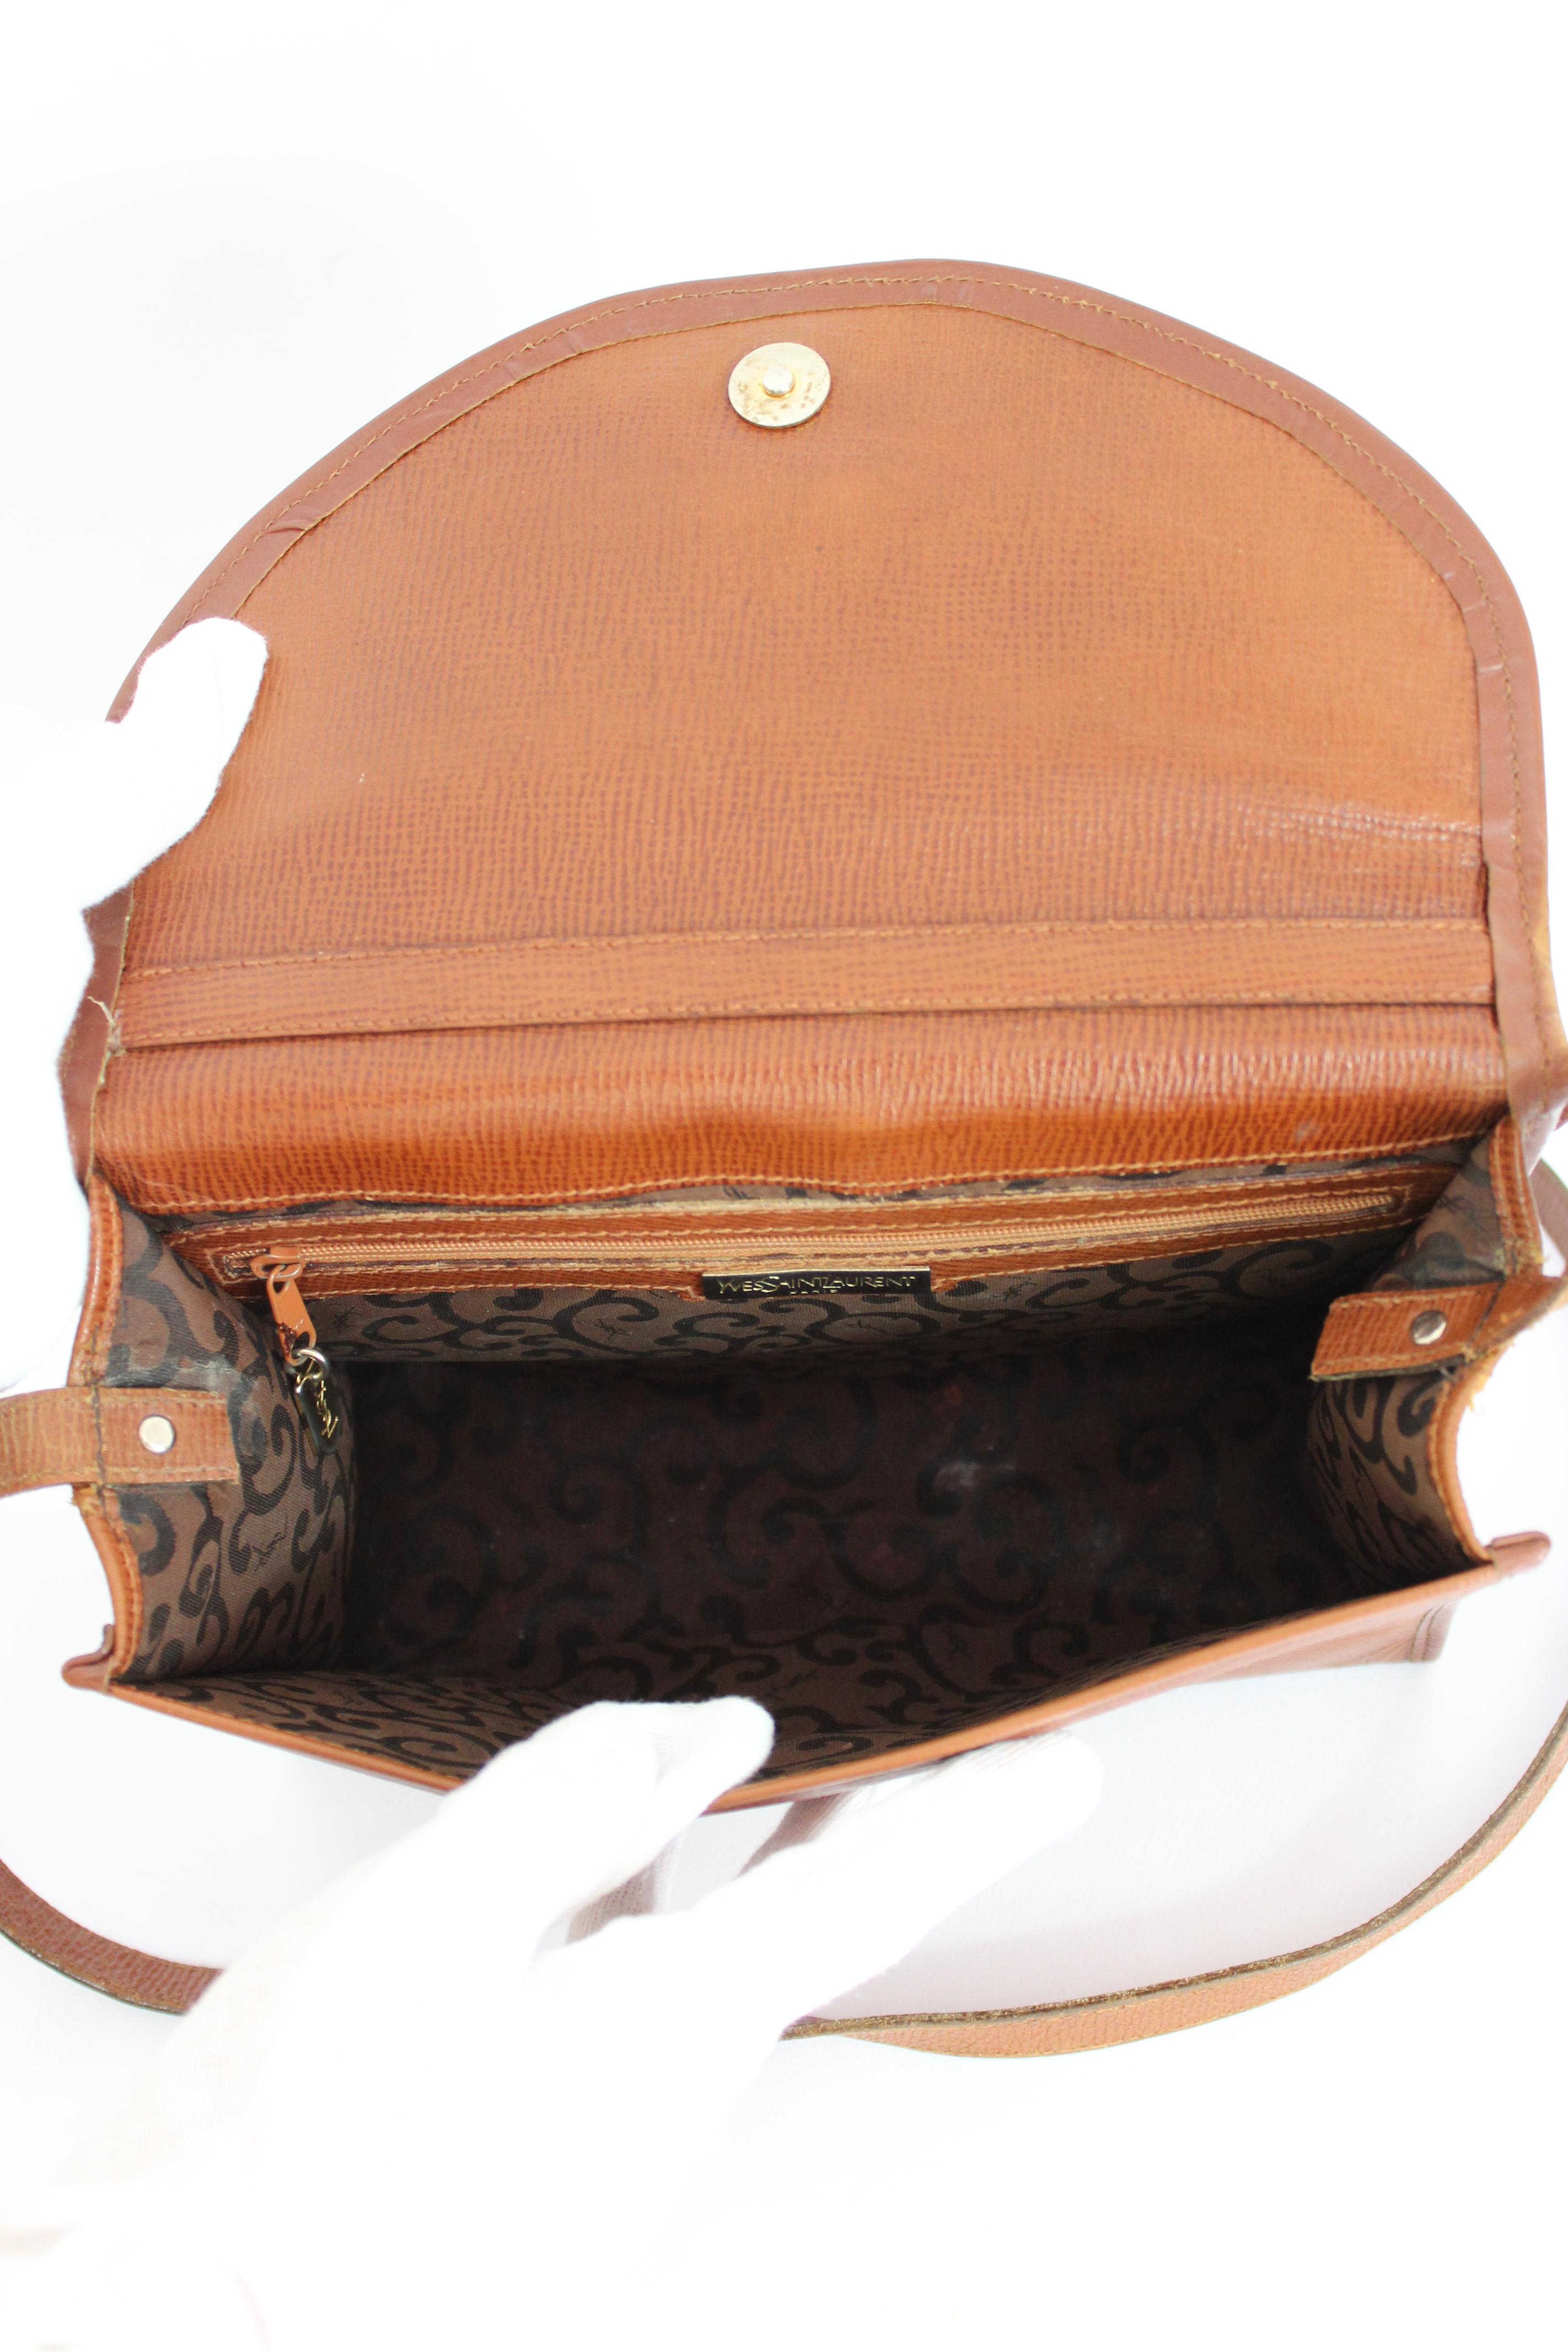 Yves Saint Laurent Brown Leather Shoulder Bag 1980s  3